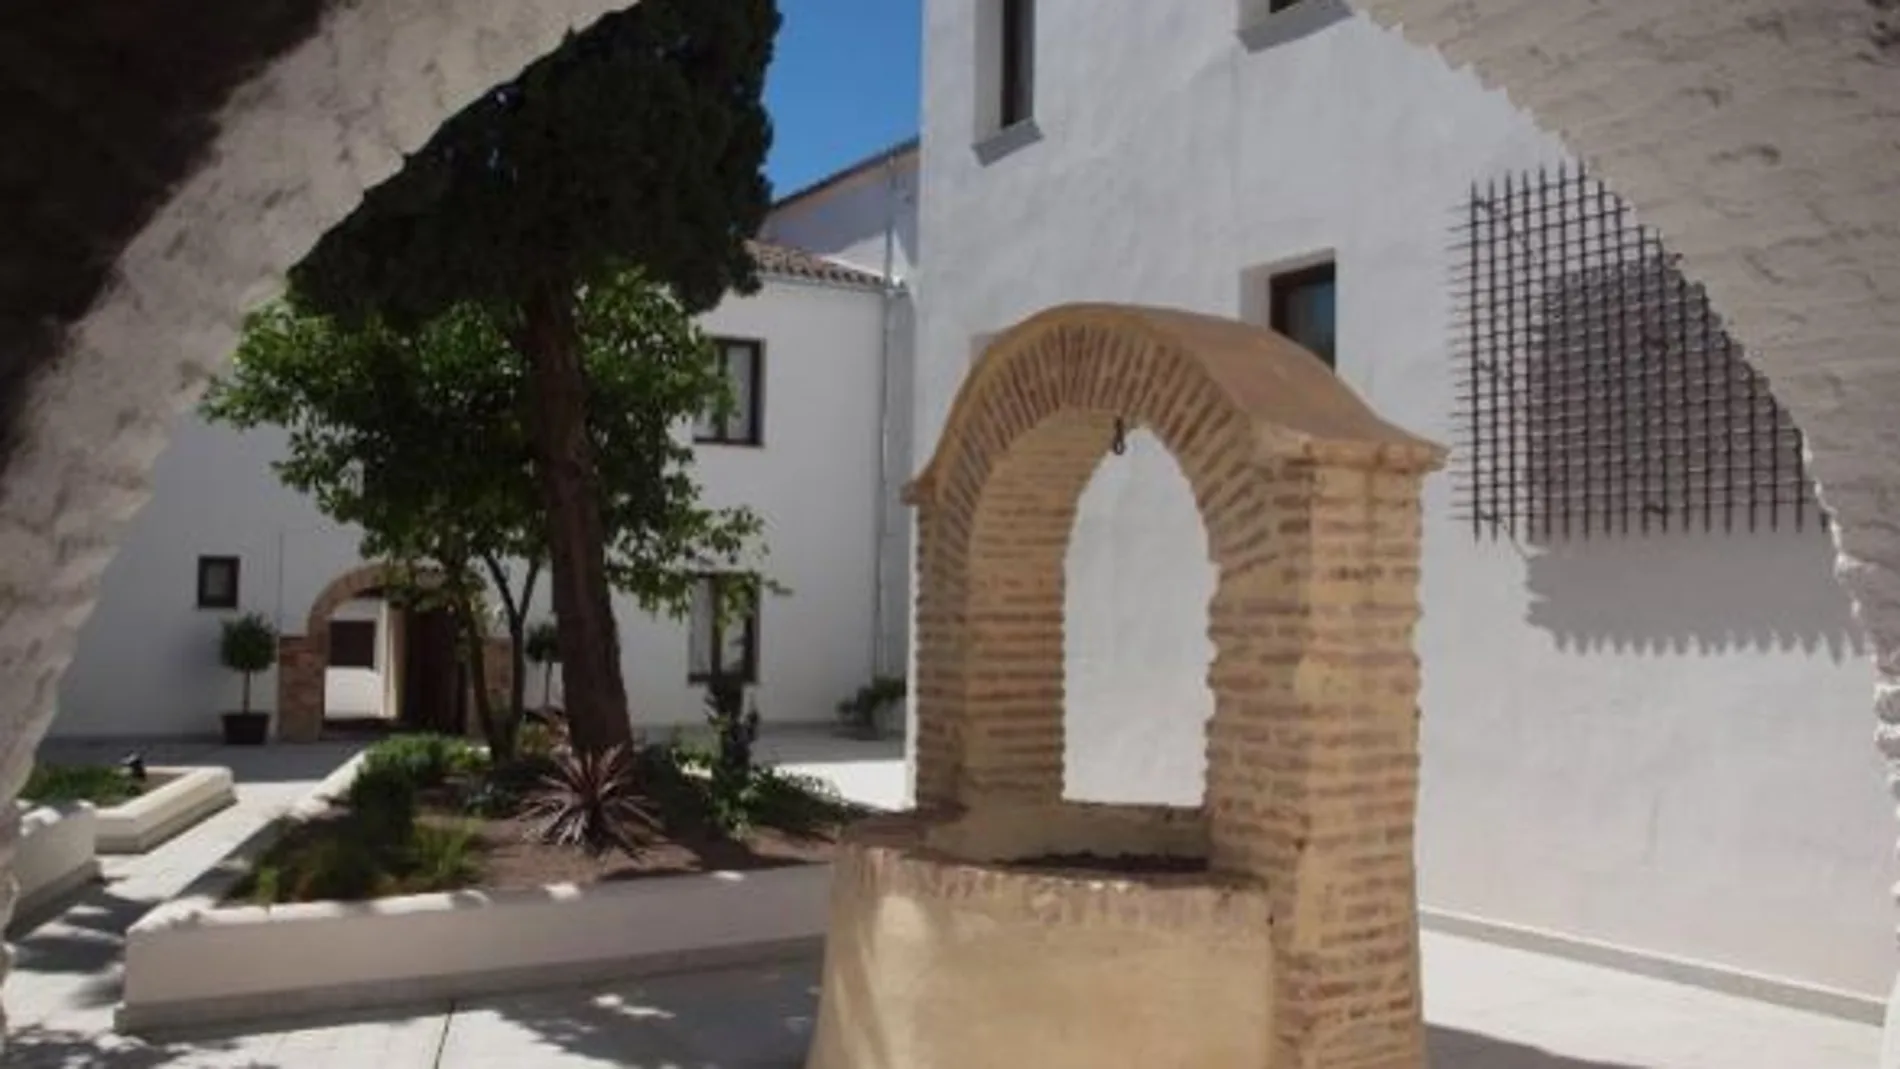 El Hotel Convento Aracena & Spa está situado en un antiguo convento del S.XVI